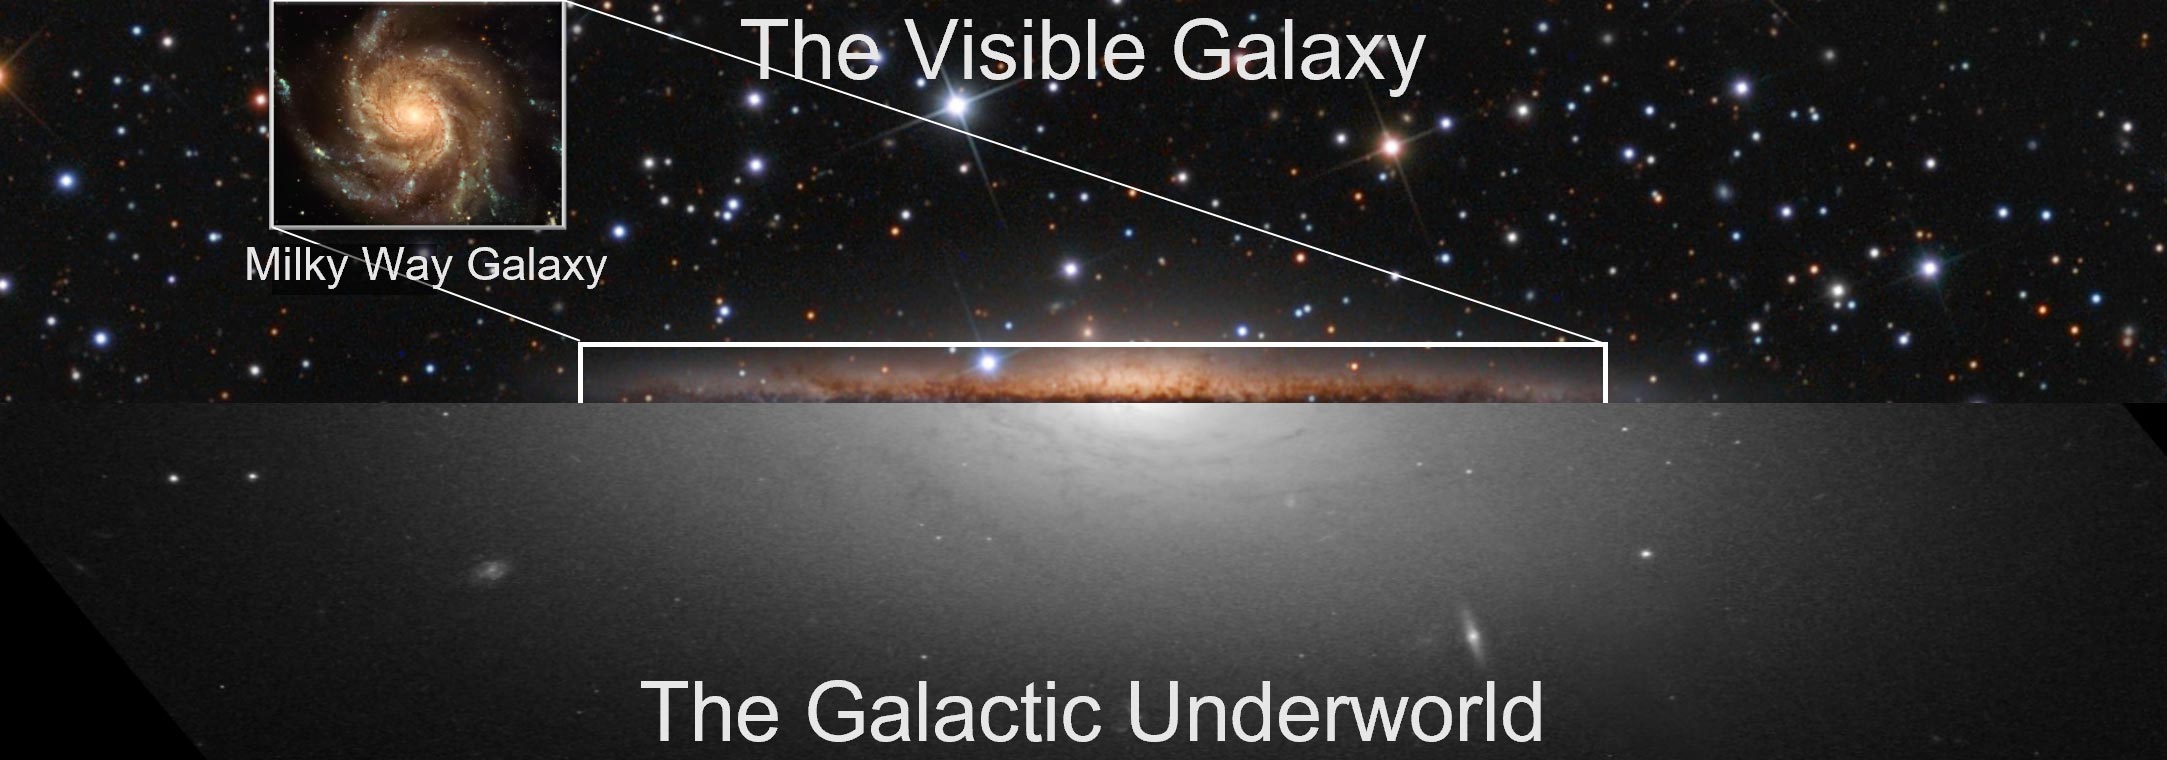 Vista dividida de la galaxia visible de la Vía Láctea frente a su inframundo galáctico.  Crédito: Universidad de Sydney